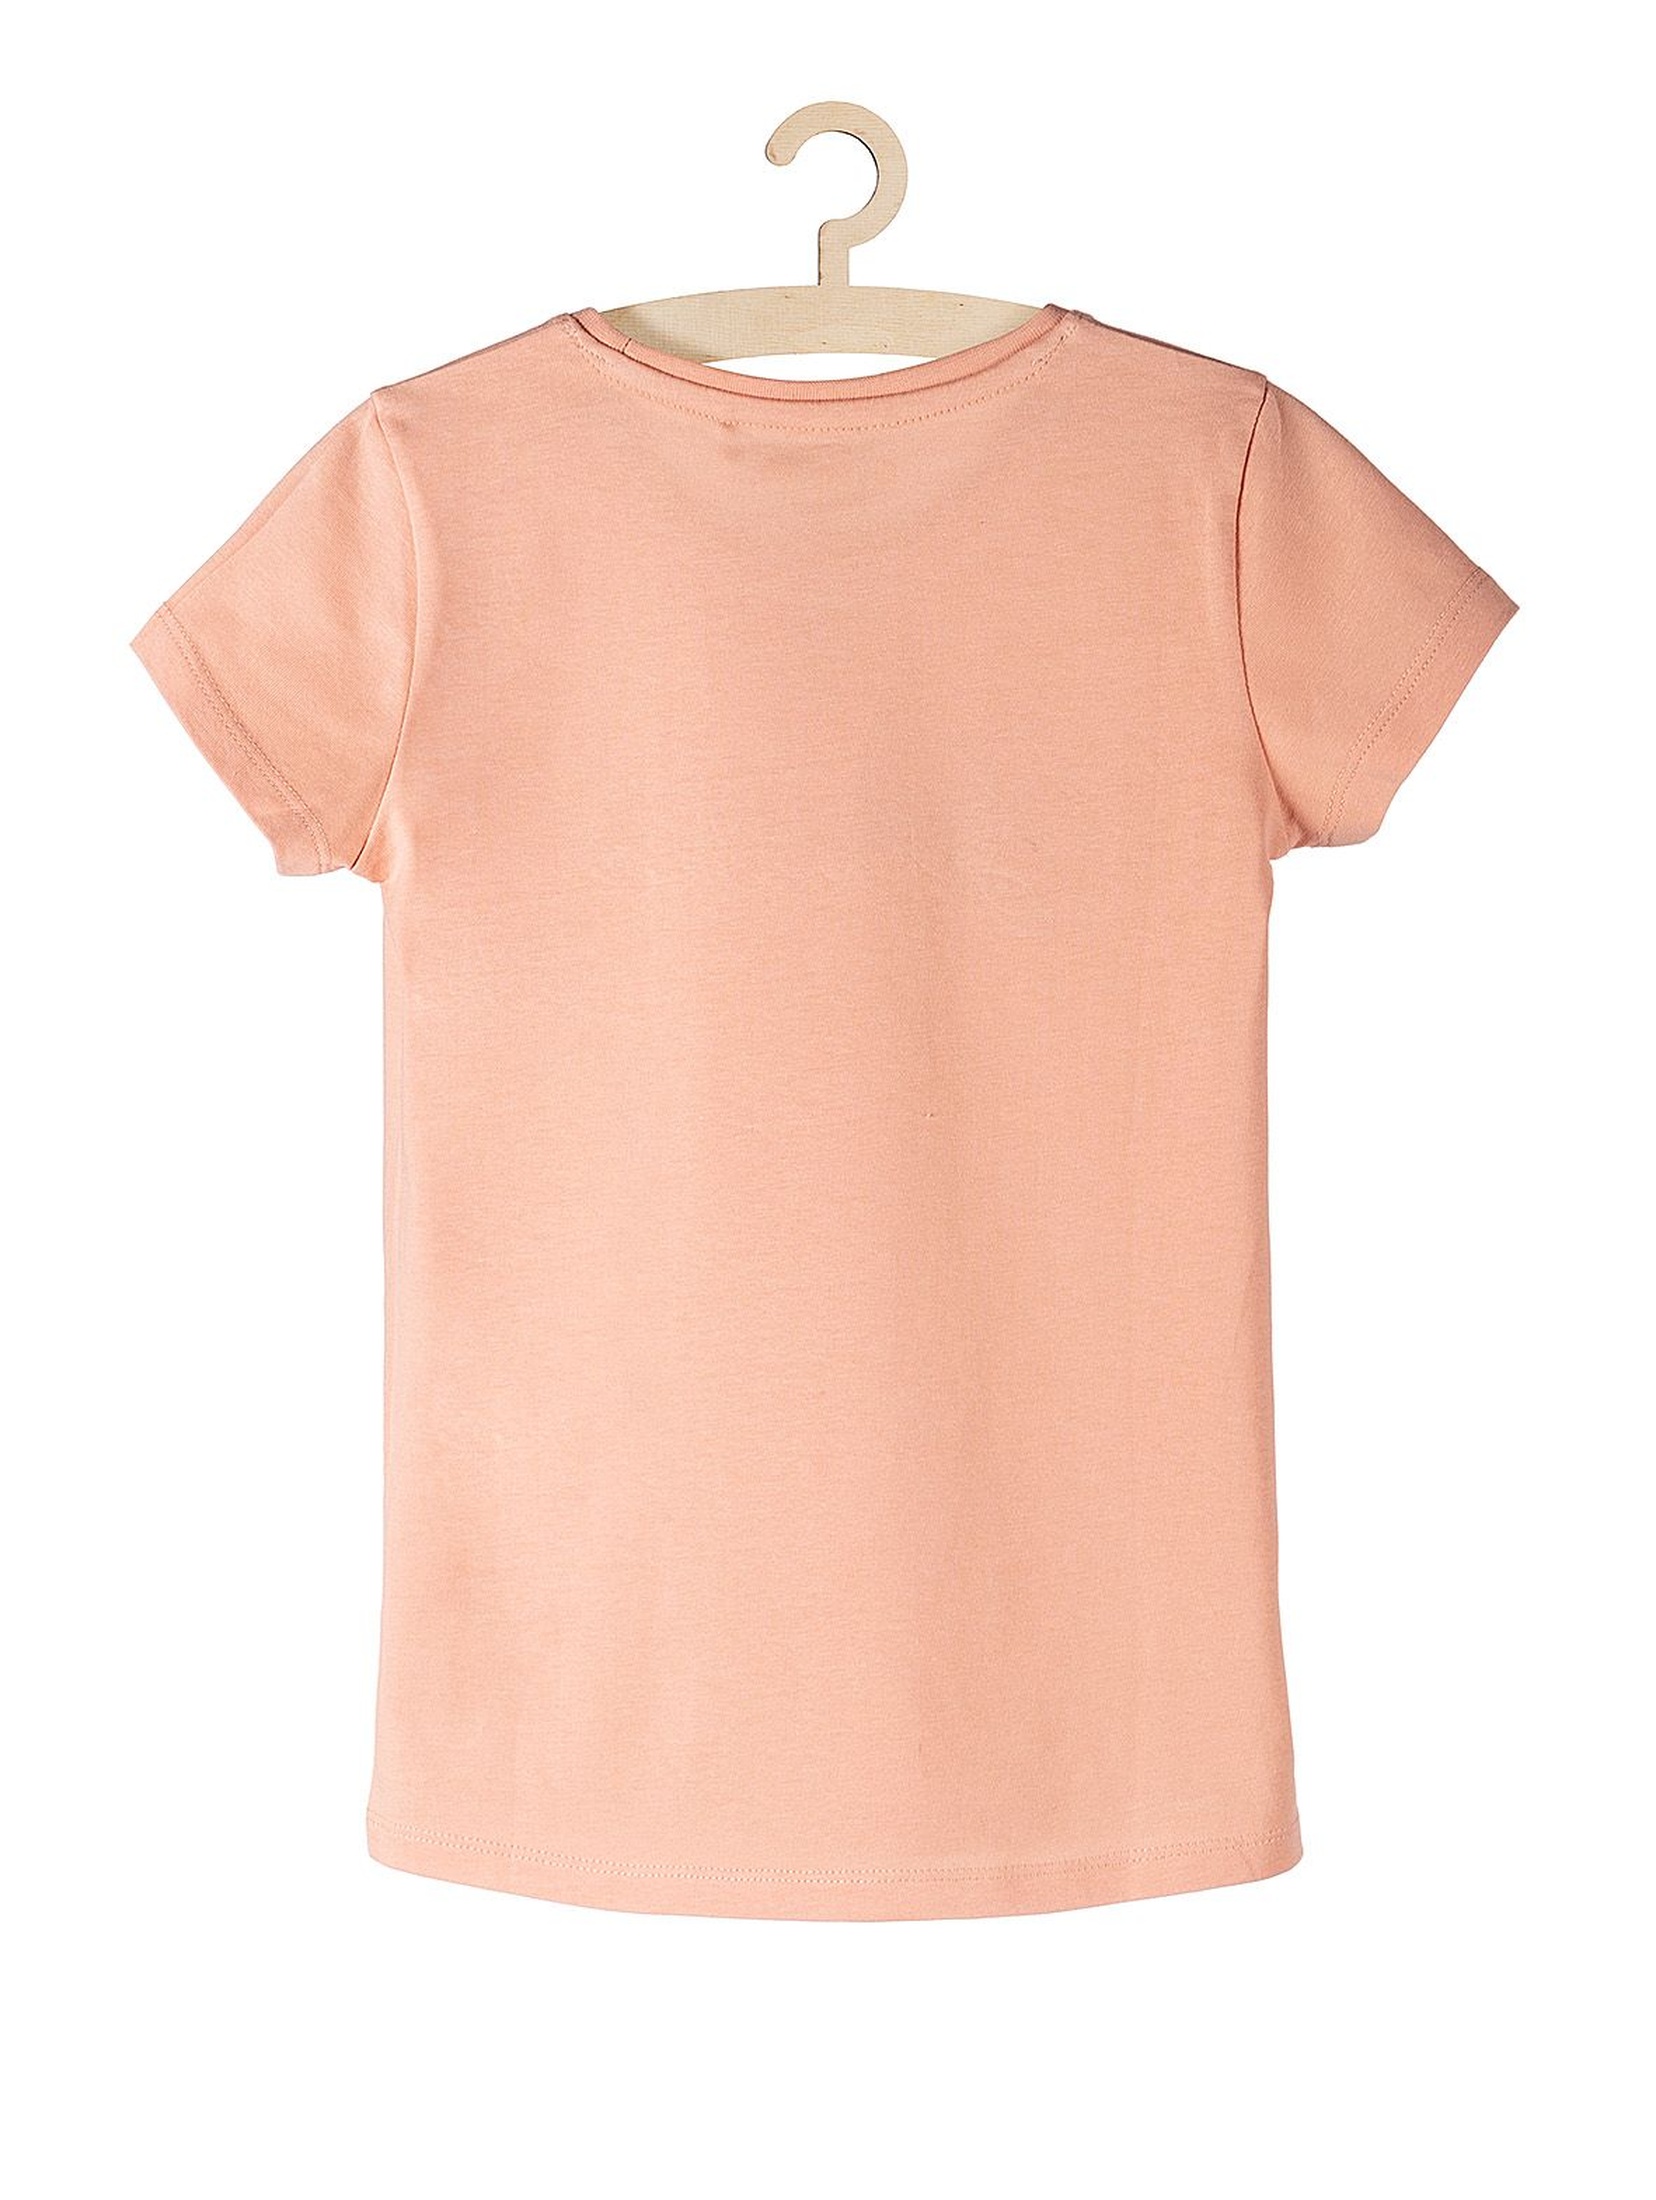 T-shirt bawełniany dla dziewczynki- różowy z napisem Milutka